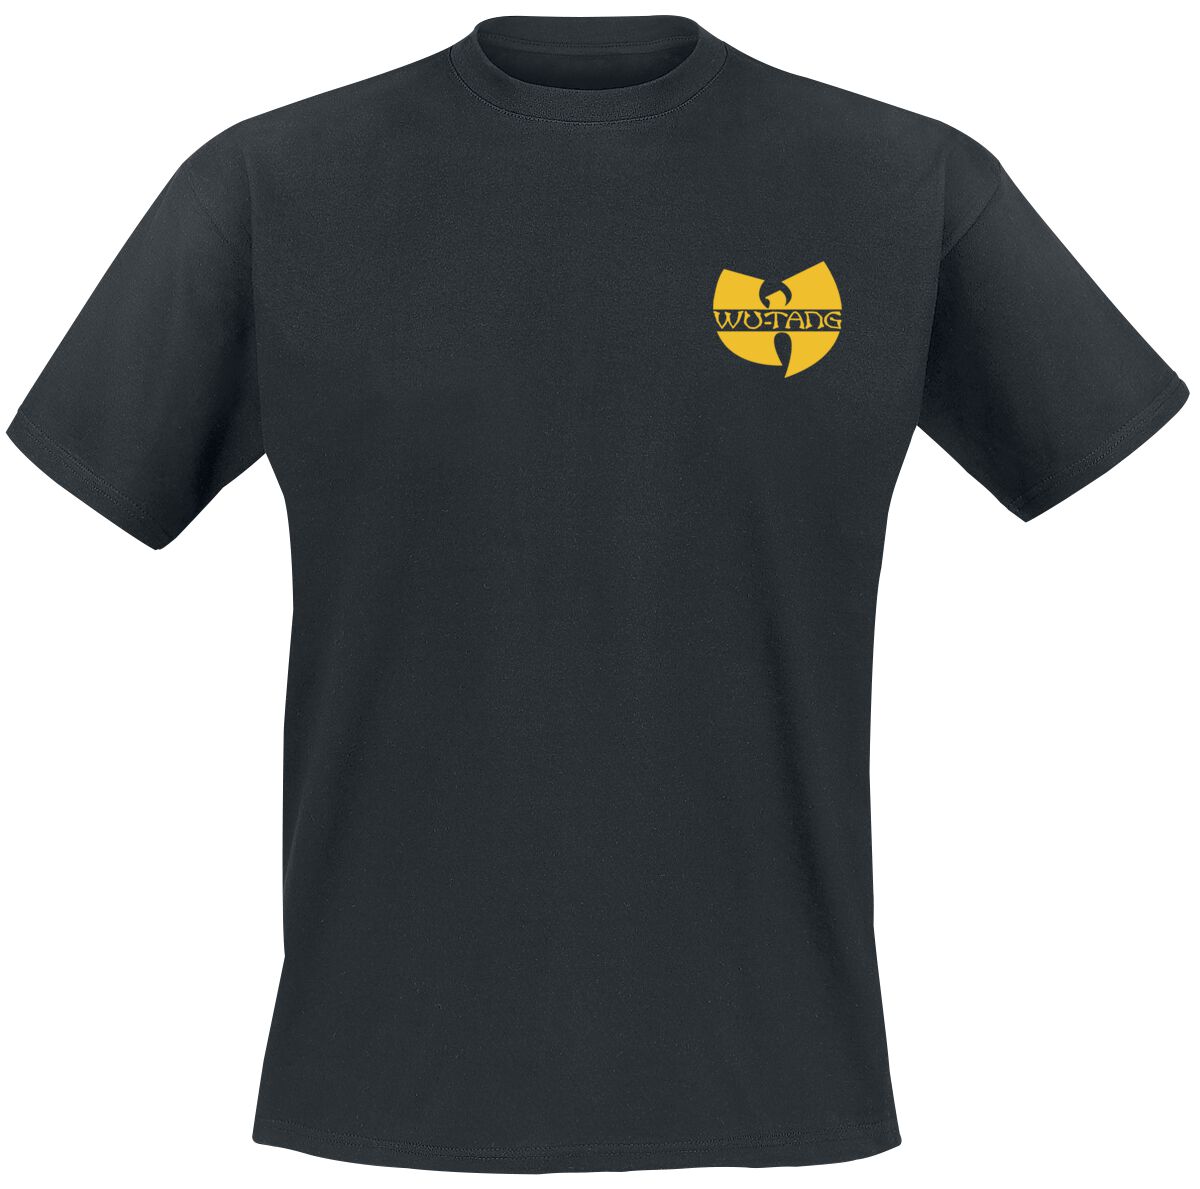 Wu-Tang Clan T-Shirt - Black Logo - S bis XXL - für Männer - Größe L - schwarz  - Lizenziertes Merchandise!